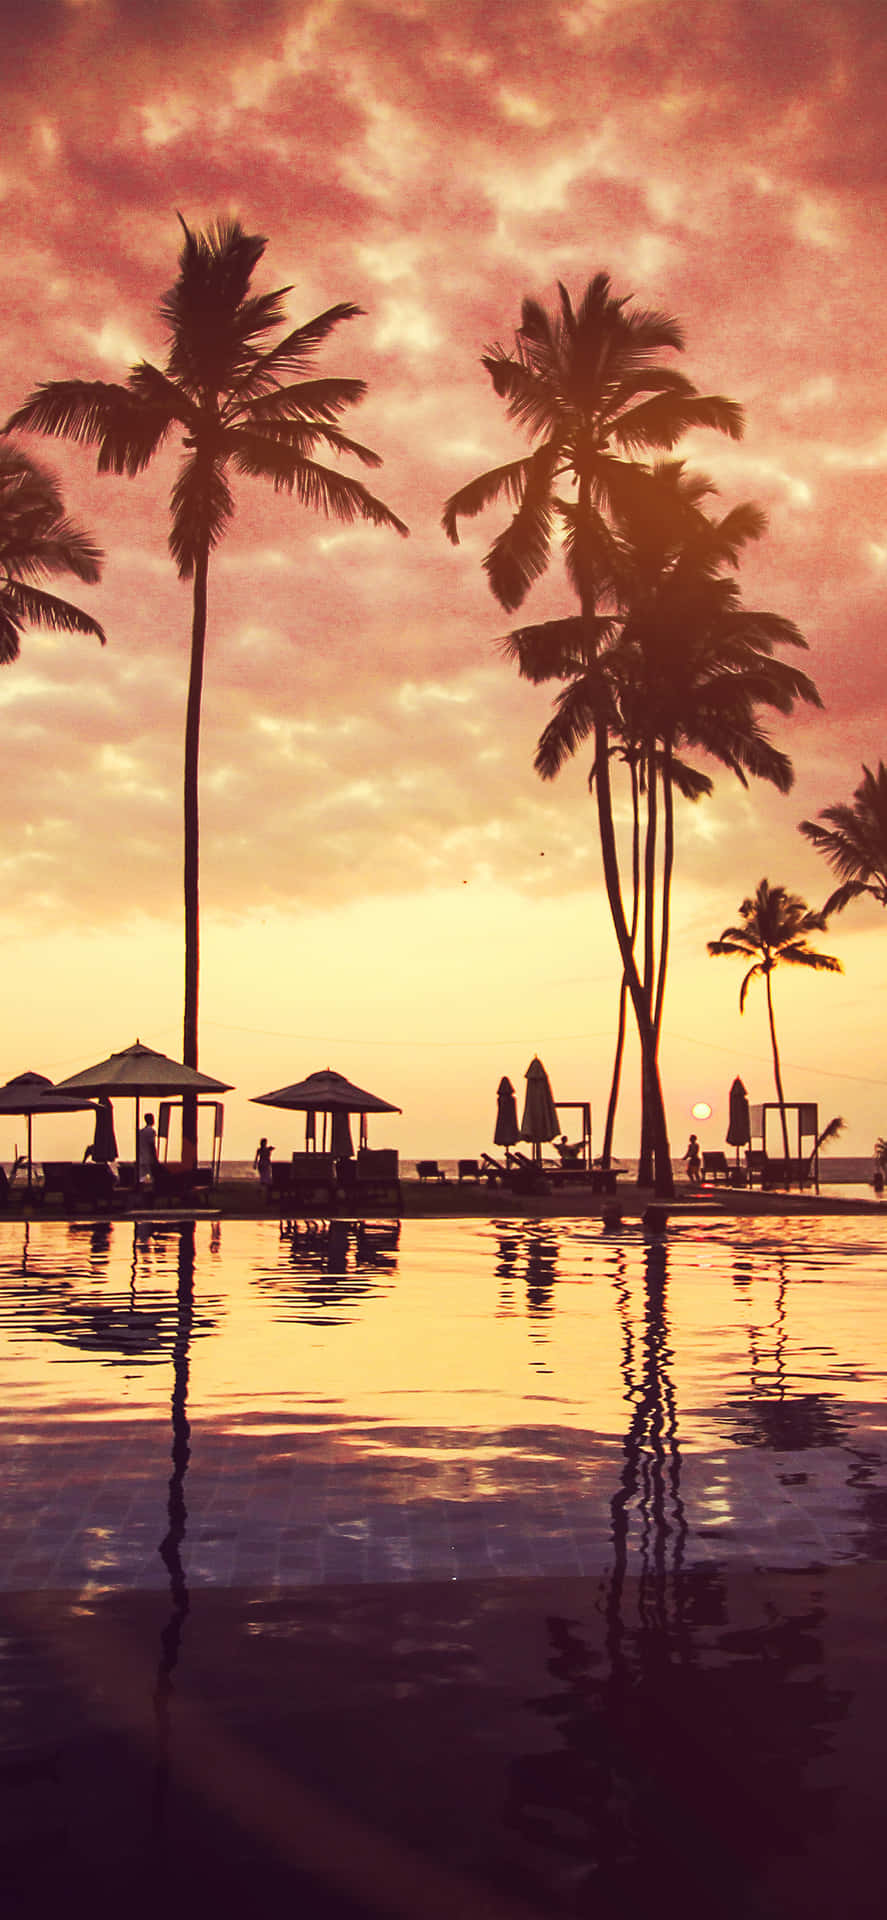 En pool med palmer og en solnedgangs himmel